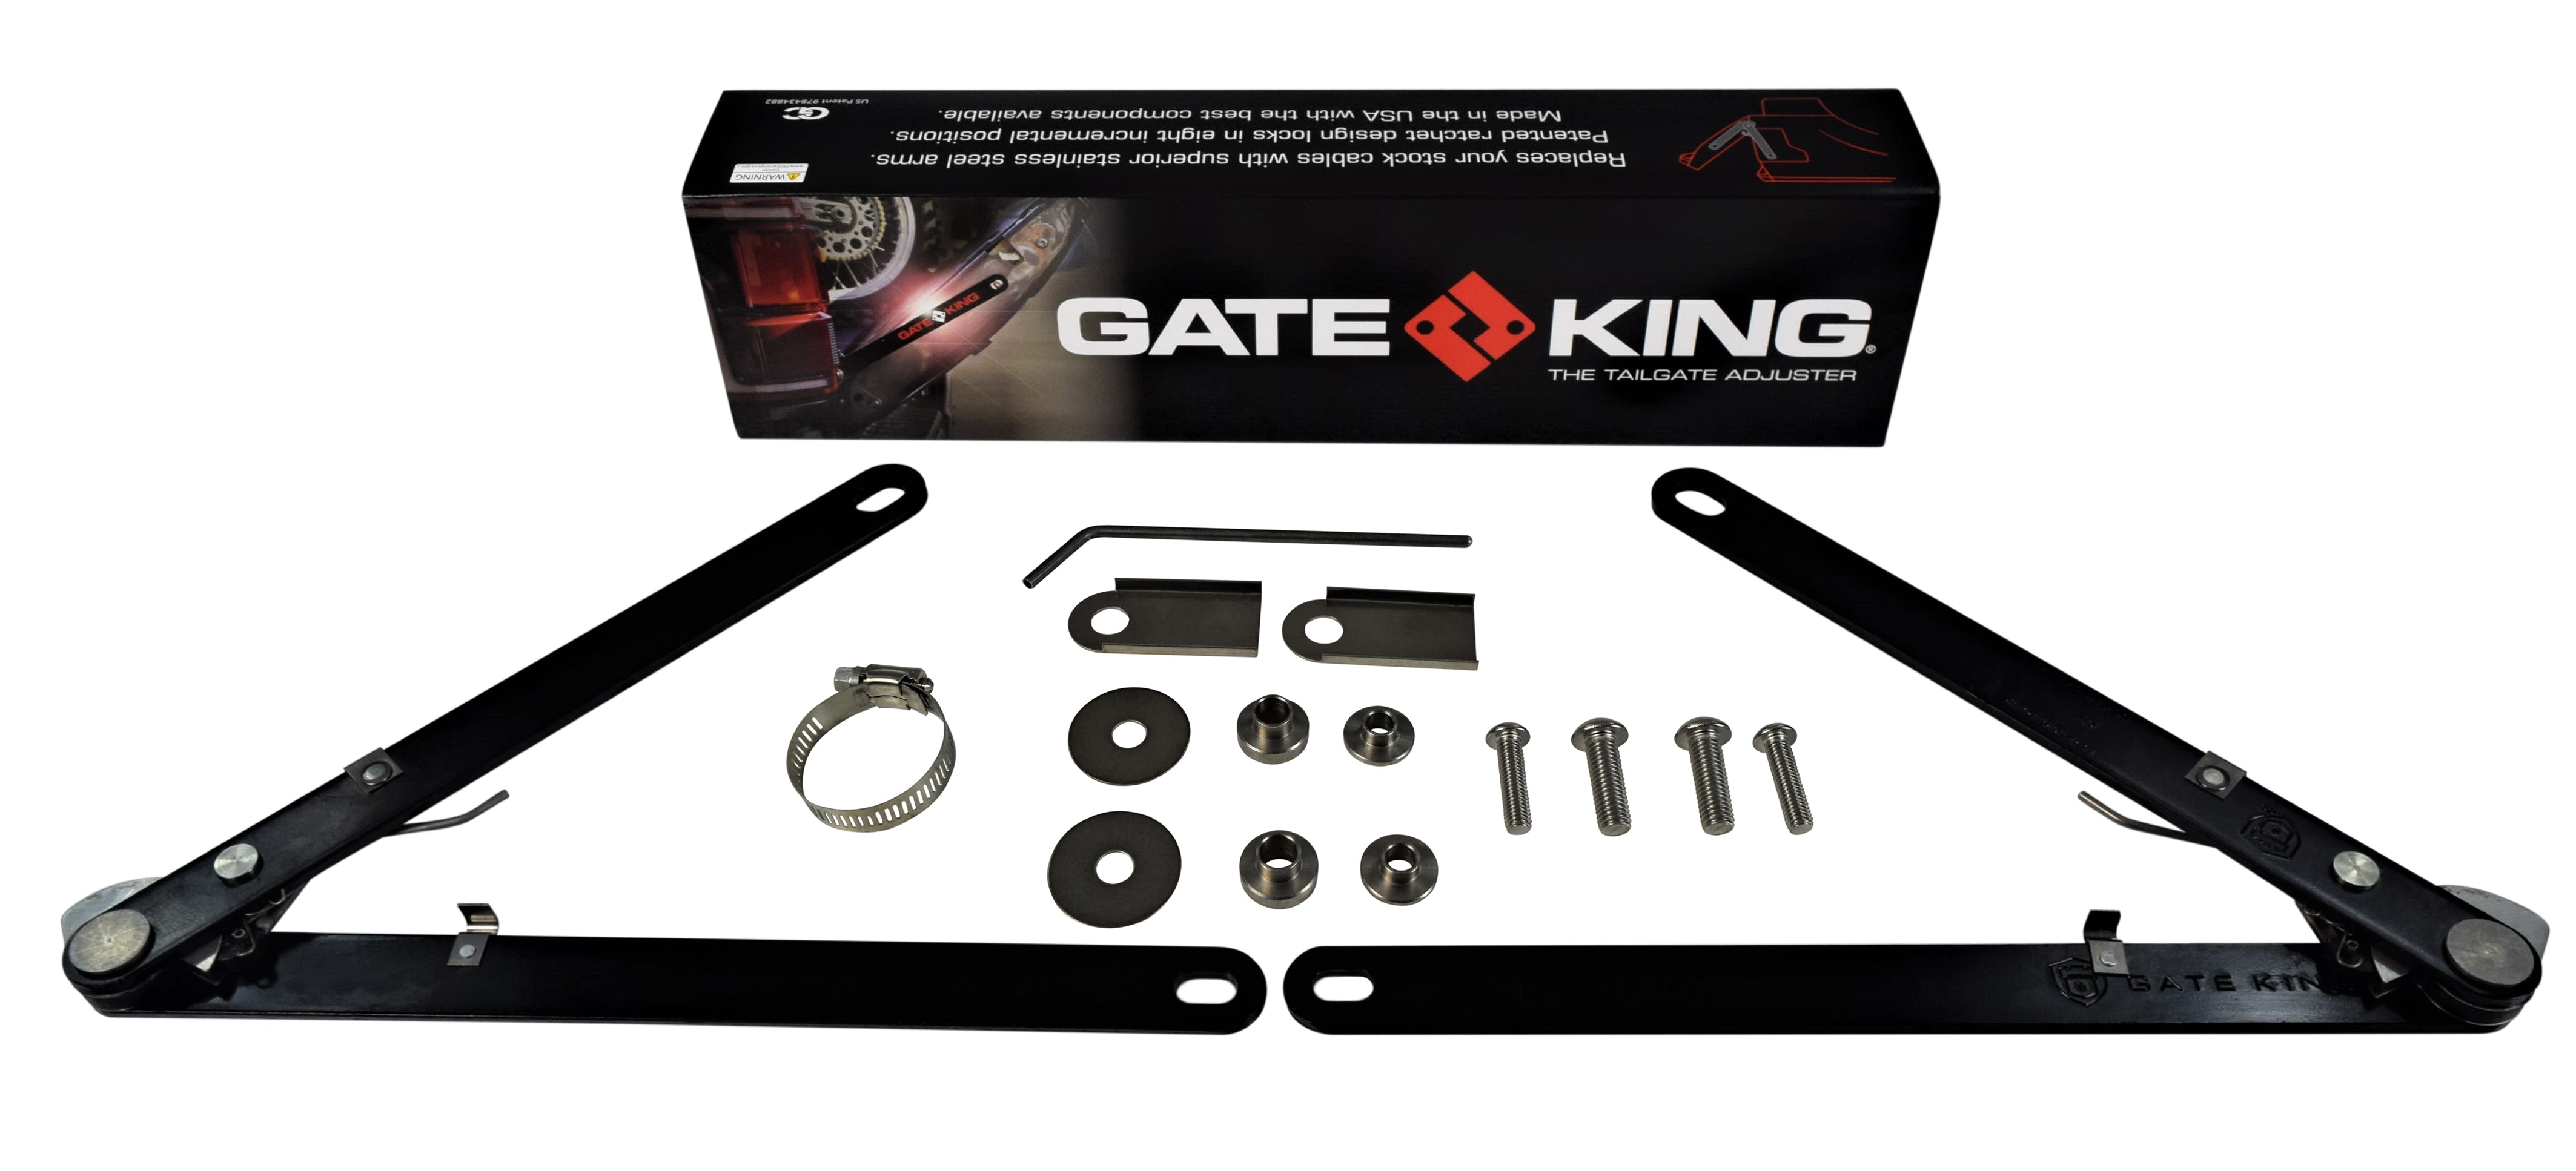 Gate King Dodge 2003-18 all, 2002 1500 Tailgate Adjuster